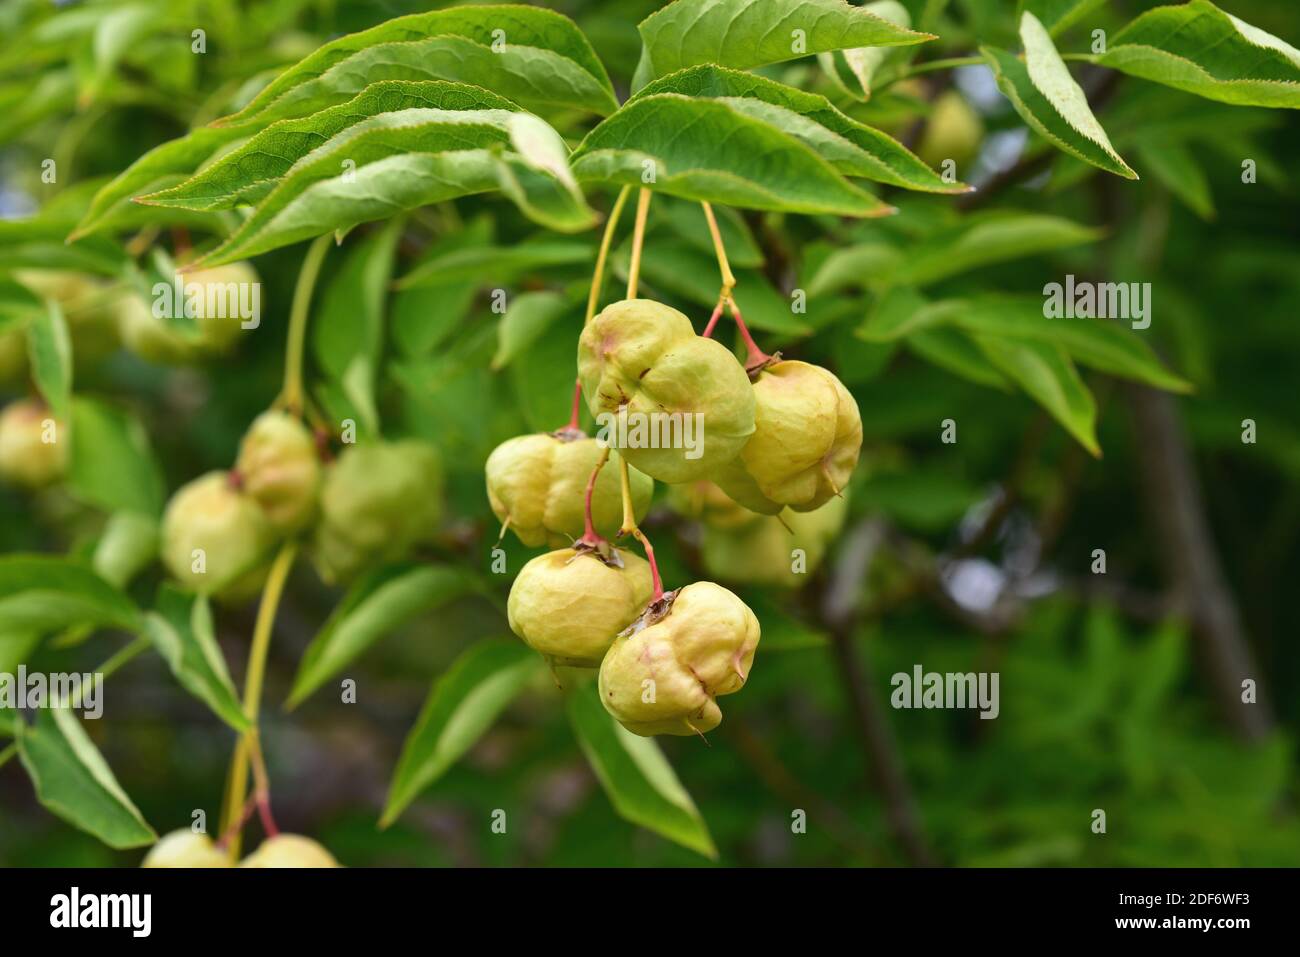 Europäische Blaswurzmutter (Staphylea pinnata) ist ein kleiner Baum, der in Mitteleuropa beheimatet ist. Seine Samen sind essbar. Stockfoto